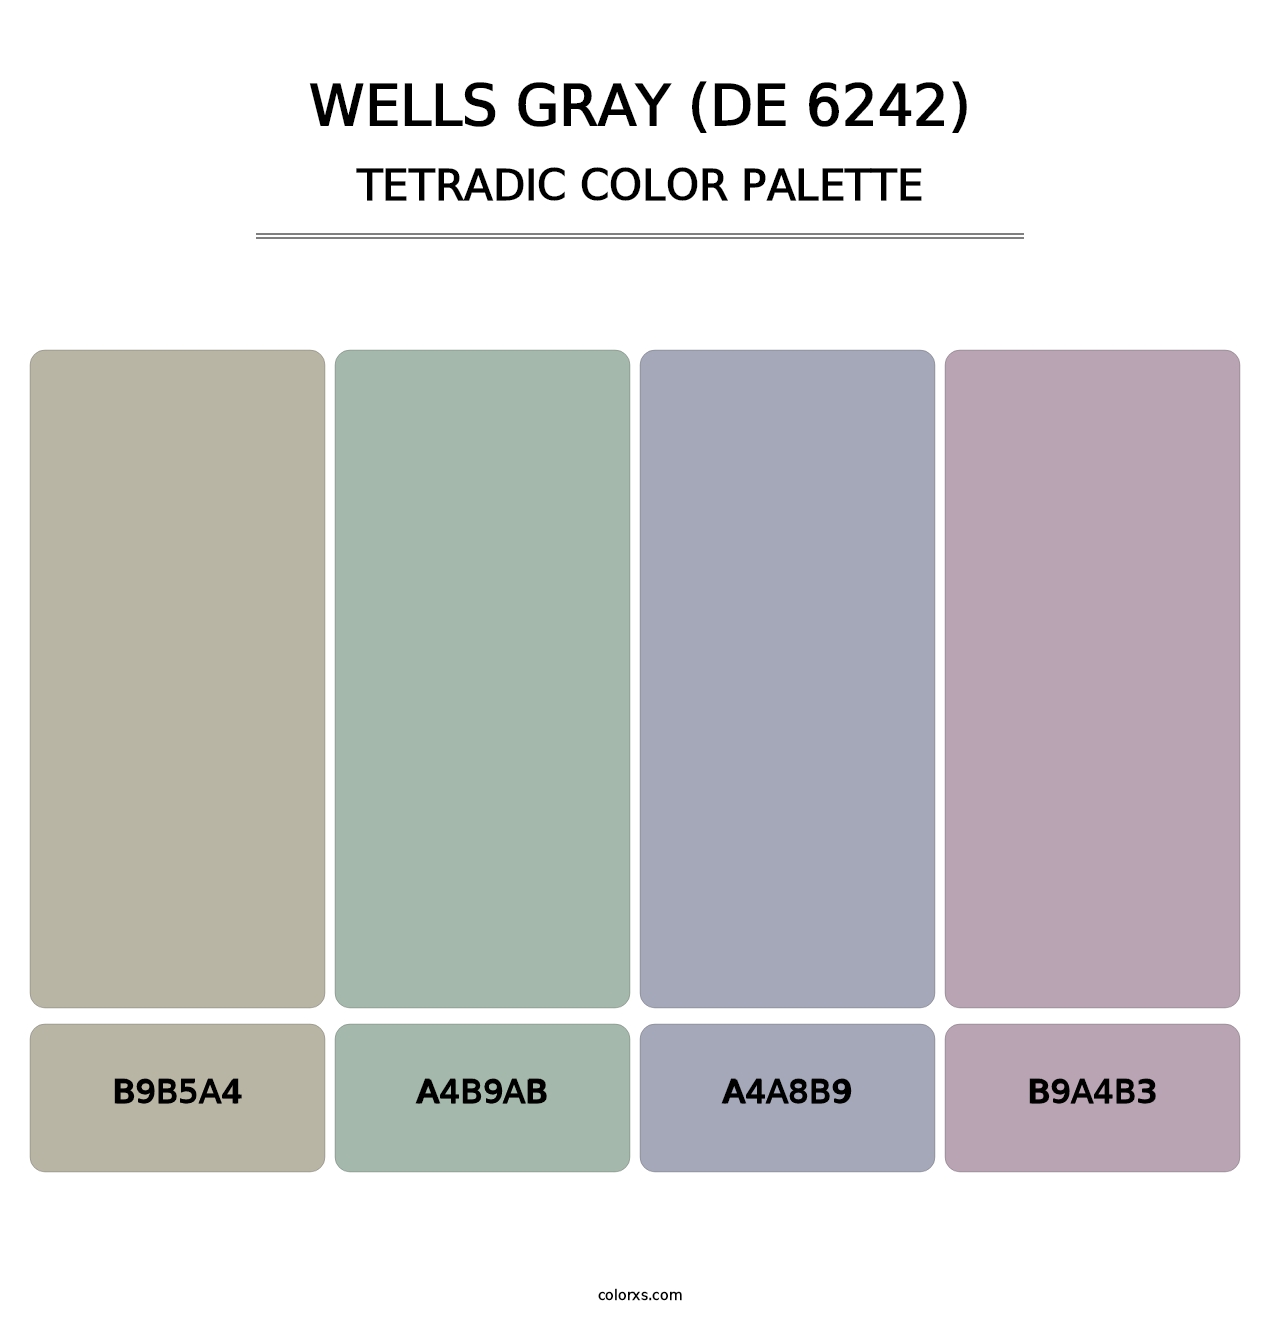 Wells Gray (DE 6242) - Tetradic Color Palette